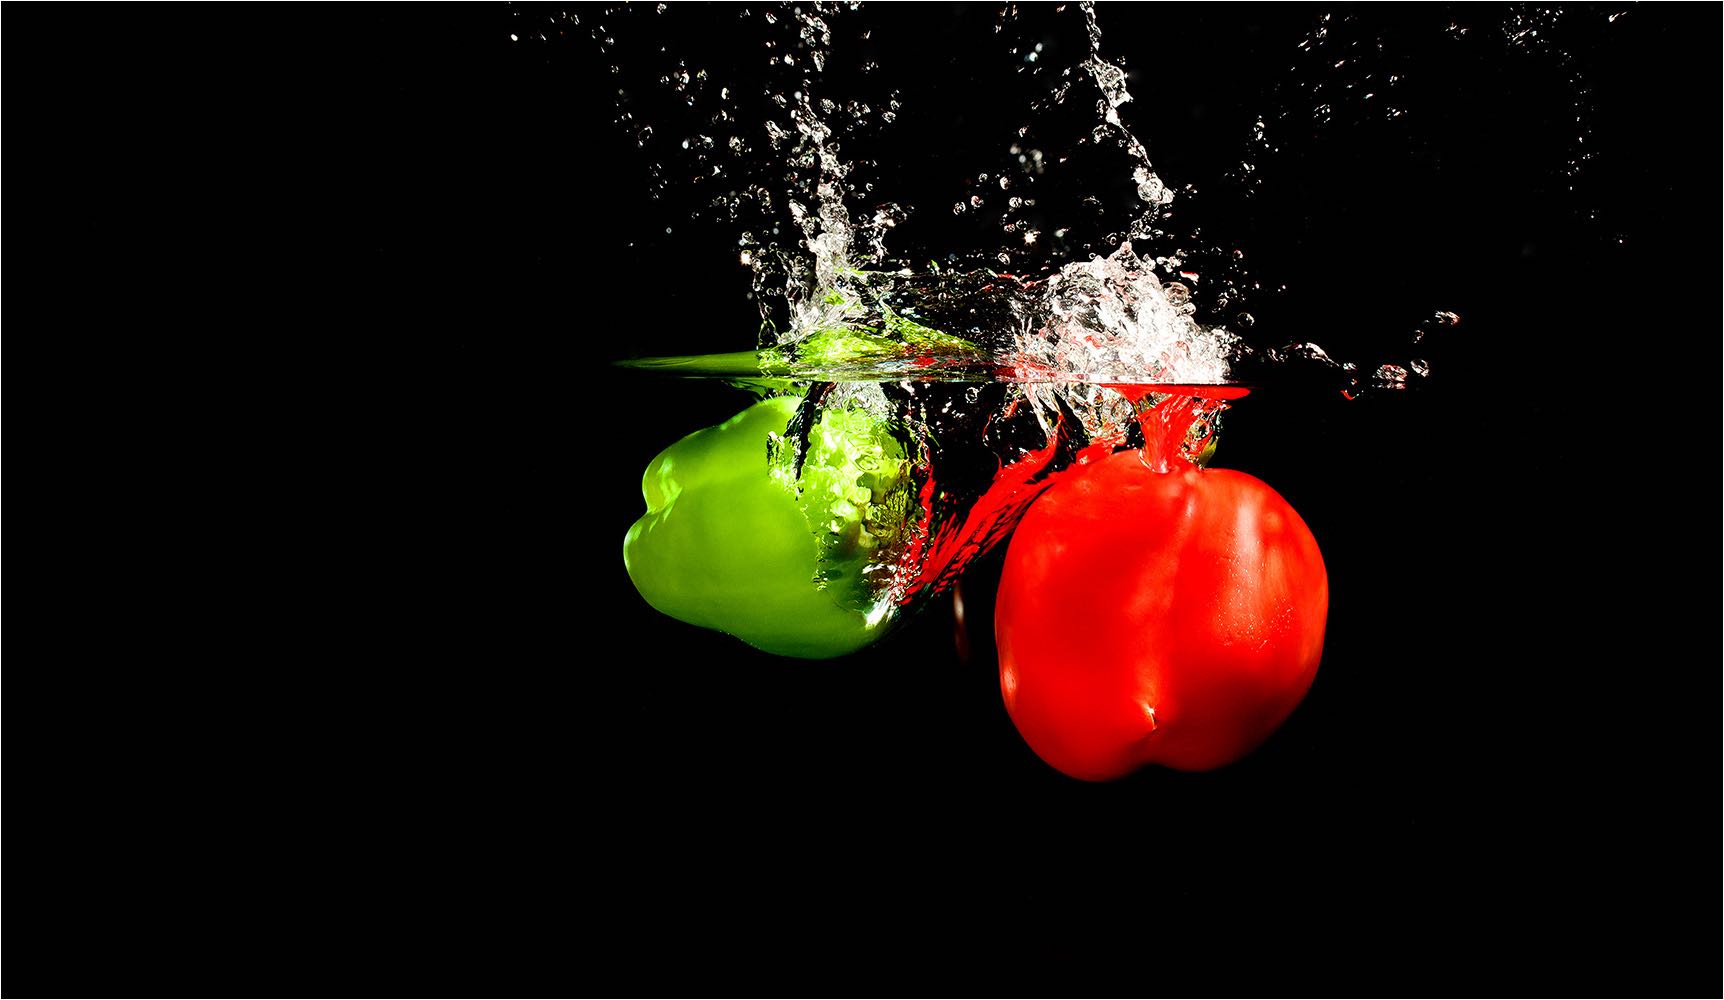  Food Fotografie. Paprika. Studiosetup unter Wasser mit digitaler Kleinbildtechnik fotogafiert mit 21 Mio Pixel Auflösung. Copyright by Fotostudio Jörg Riethausen 